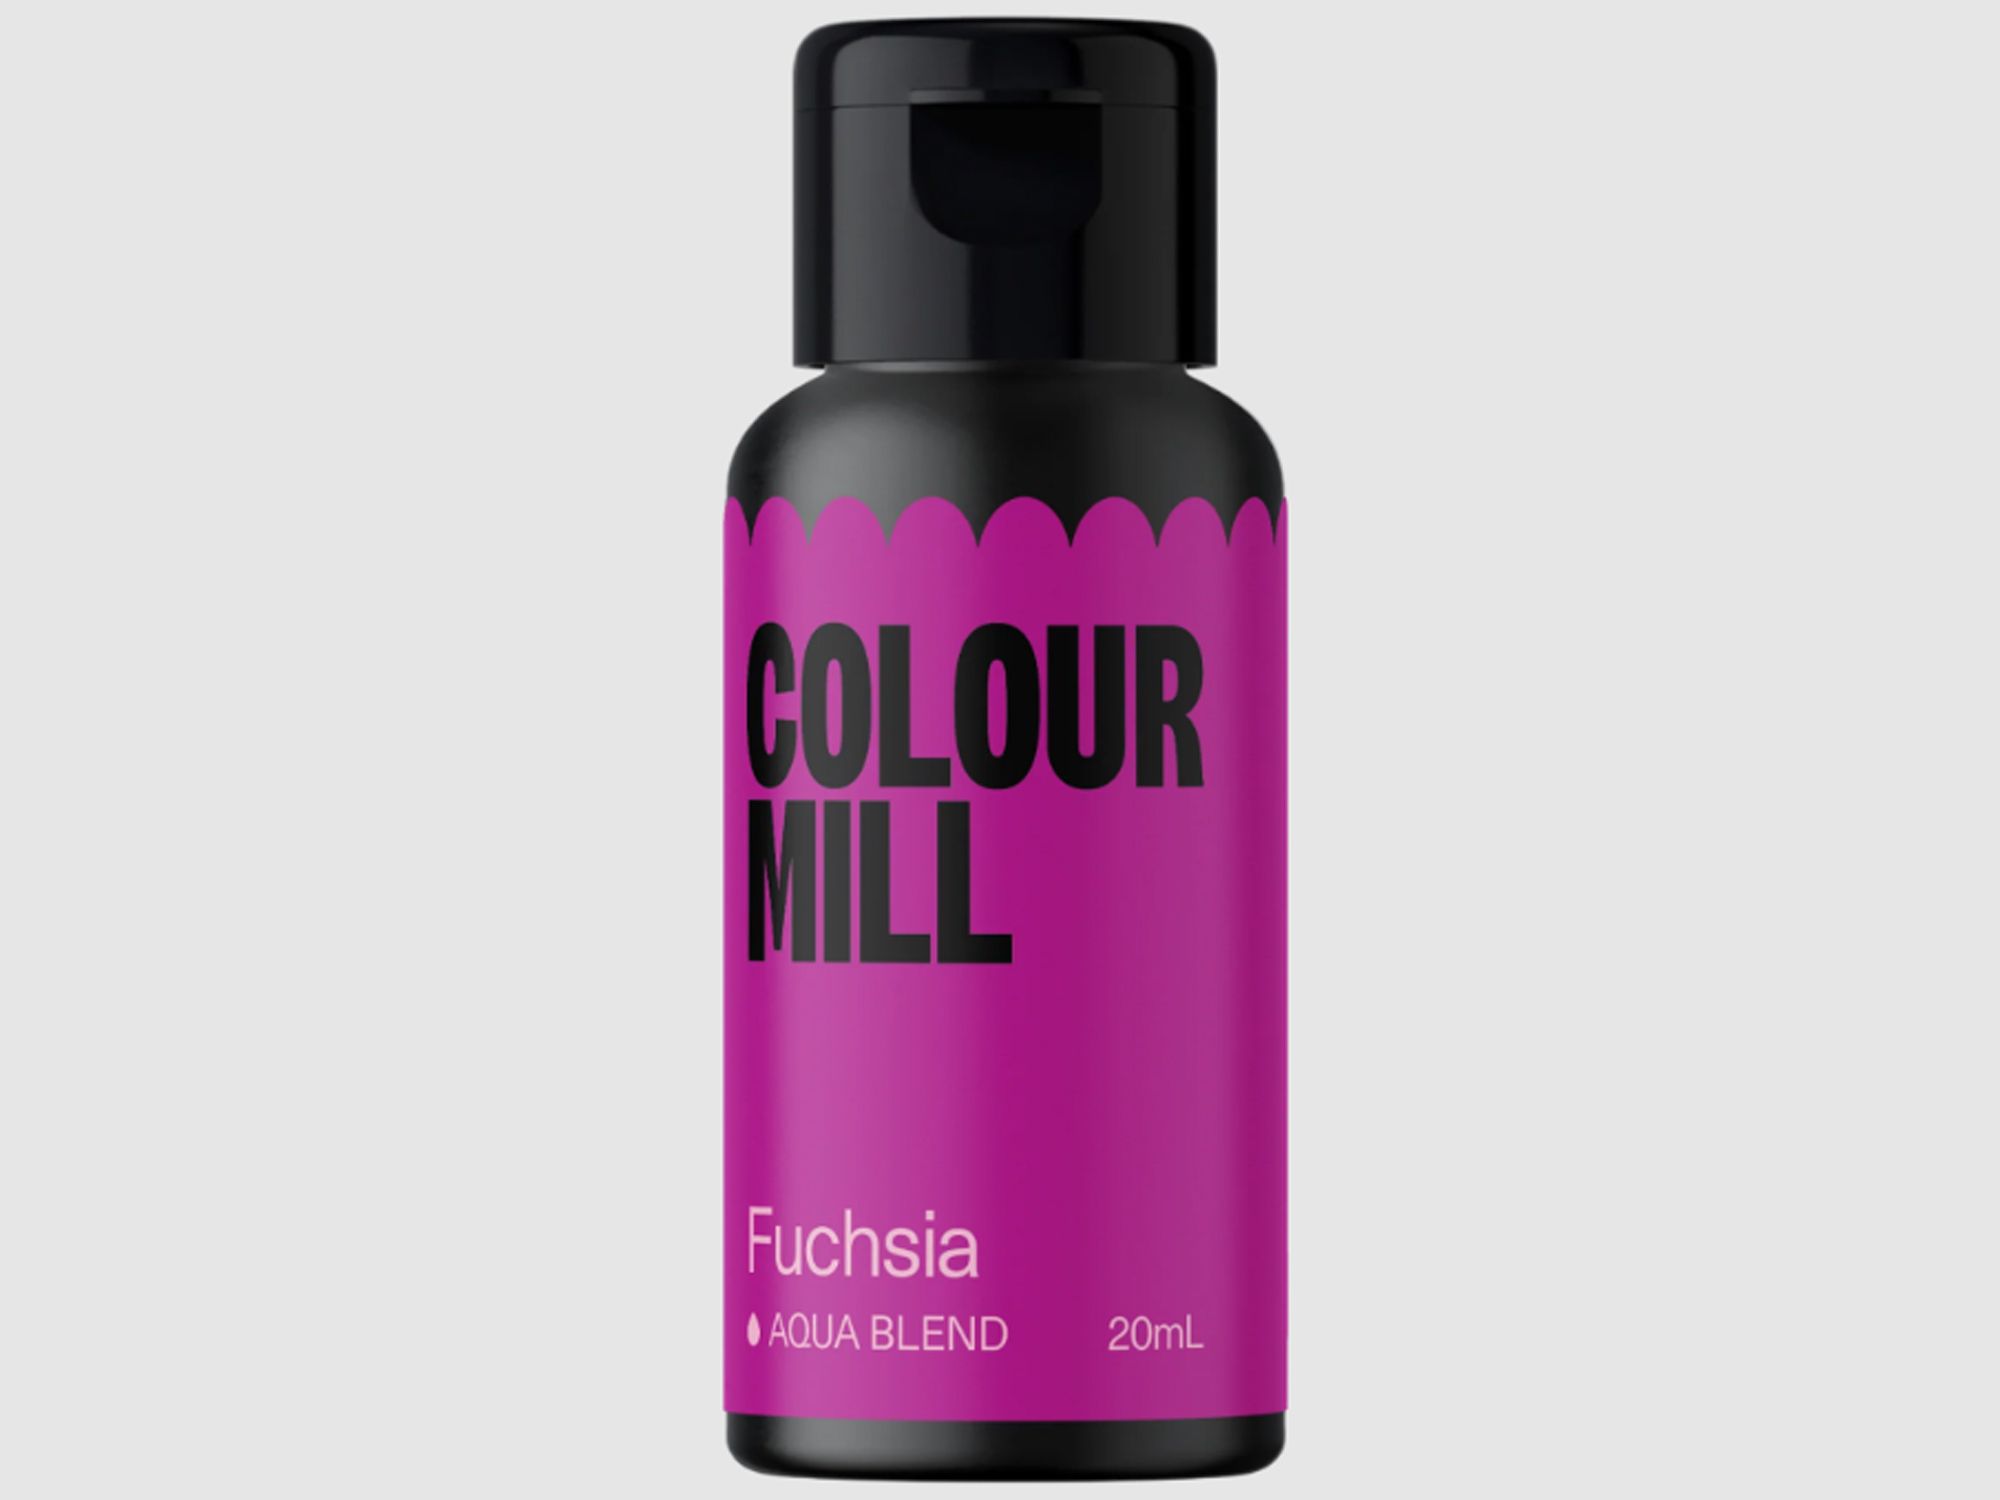 Colour Mill Fuchsia (Aqua Blend) 20ml